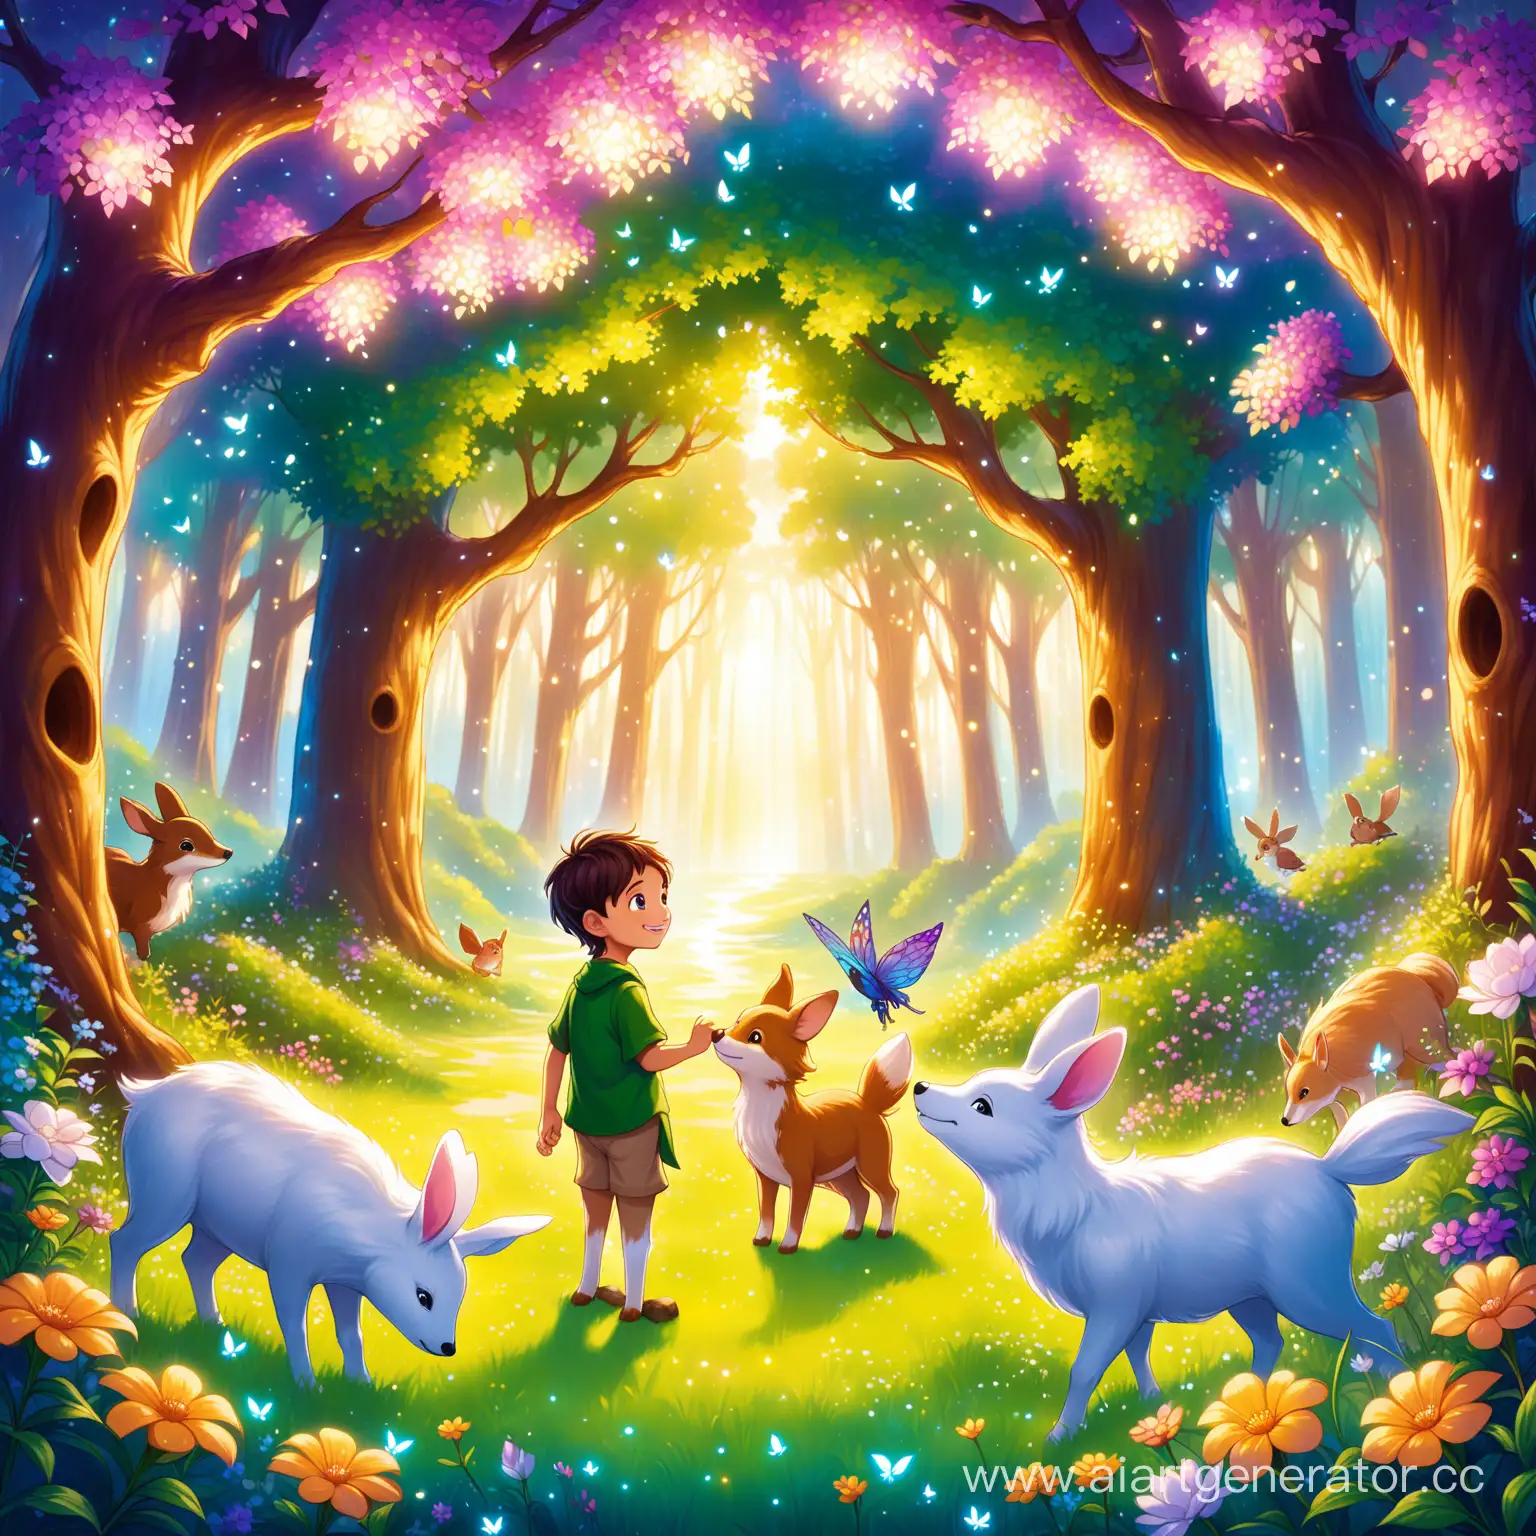 Джек попадает в Тайное Королевство Воображения и оказывается в заколдованном лесу. Говорящие животные приветствуют его теплыми улыбками, а цветы шепчут секреты на ухо. Он понимает, что в этом волшебном месте возможно все.